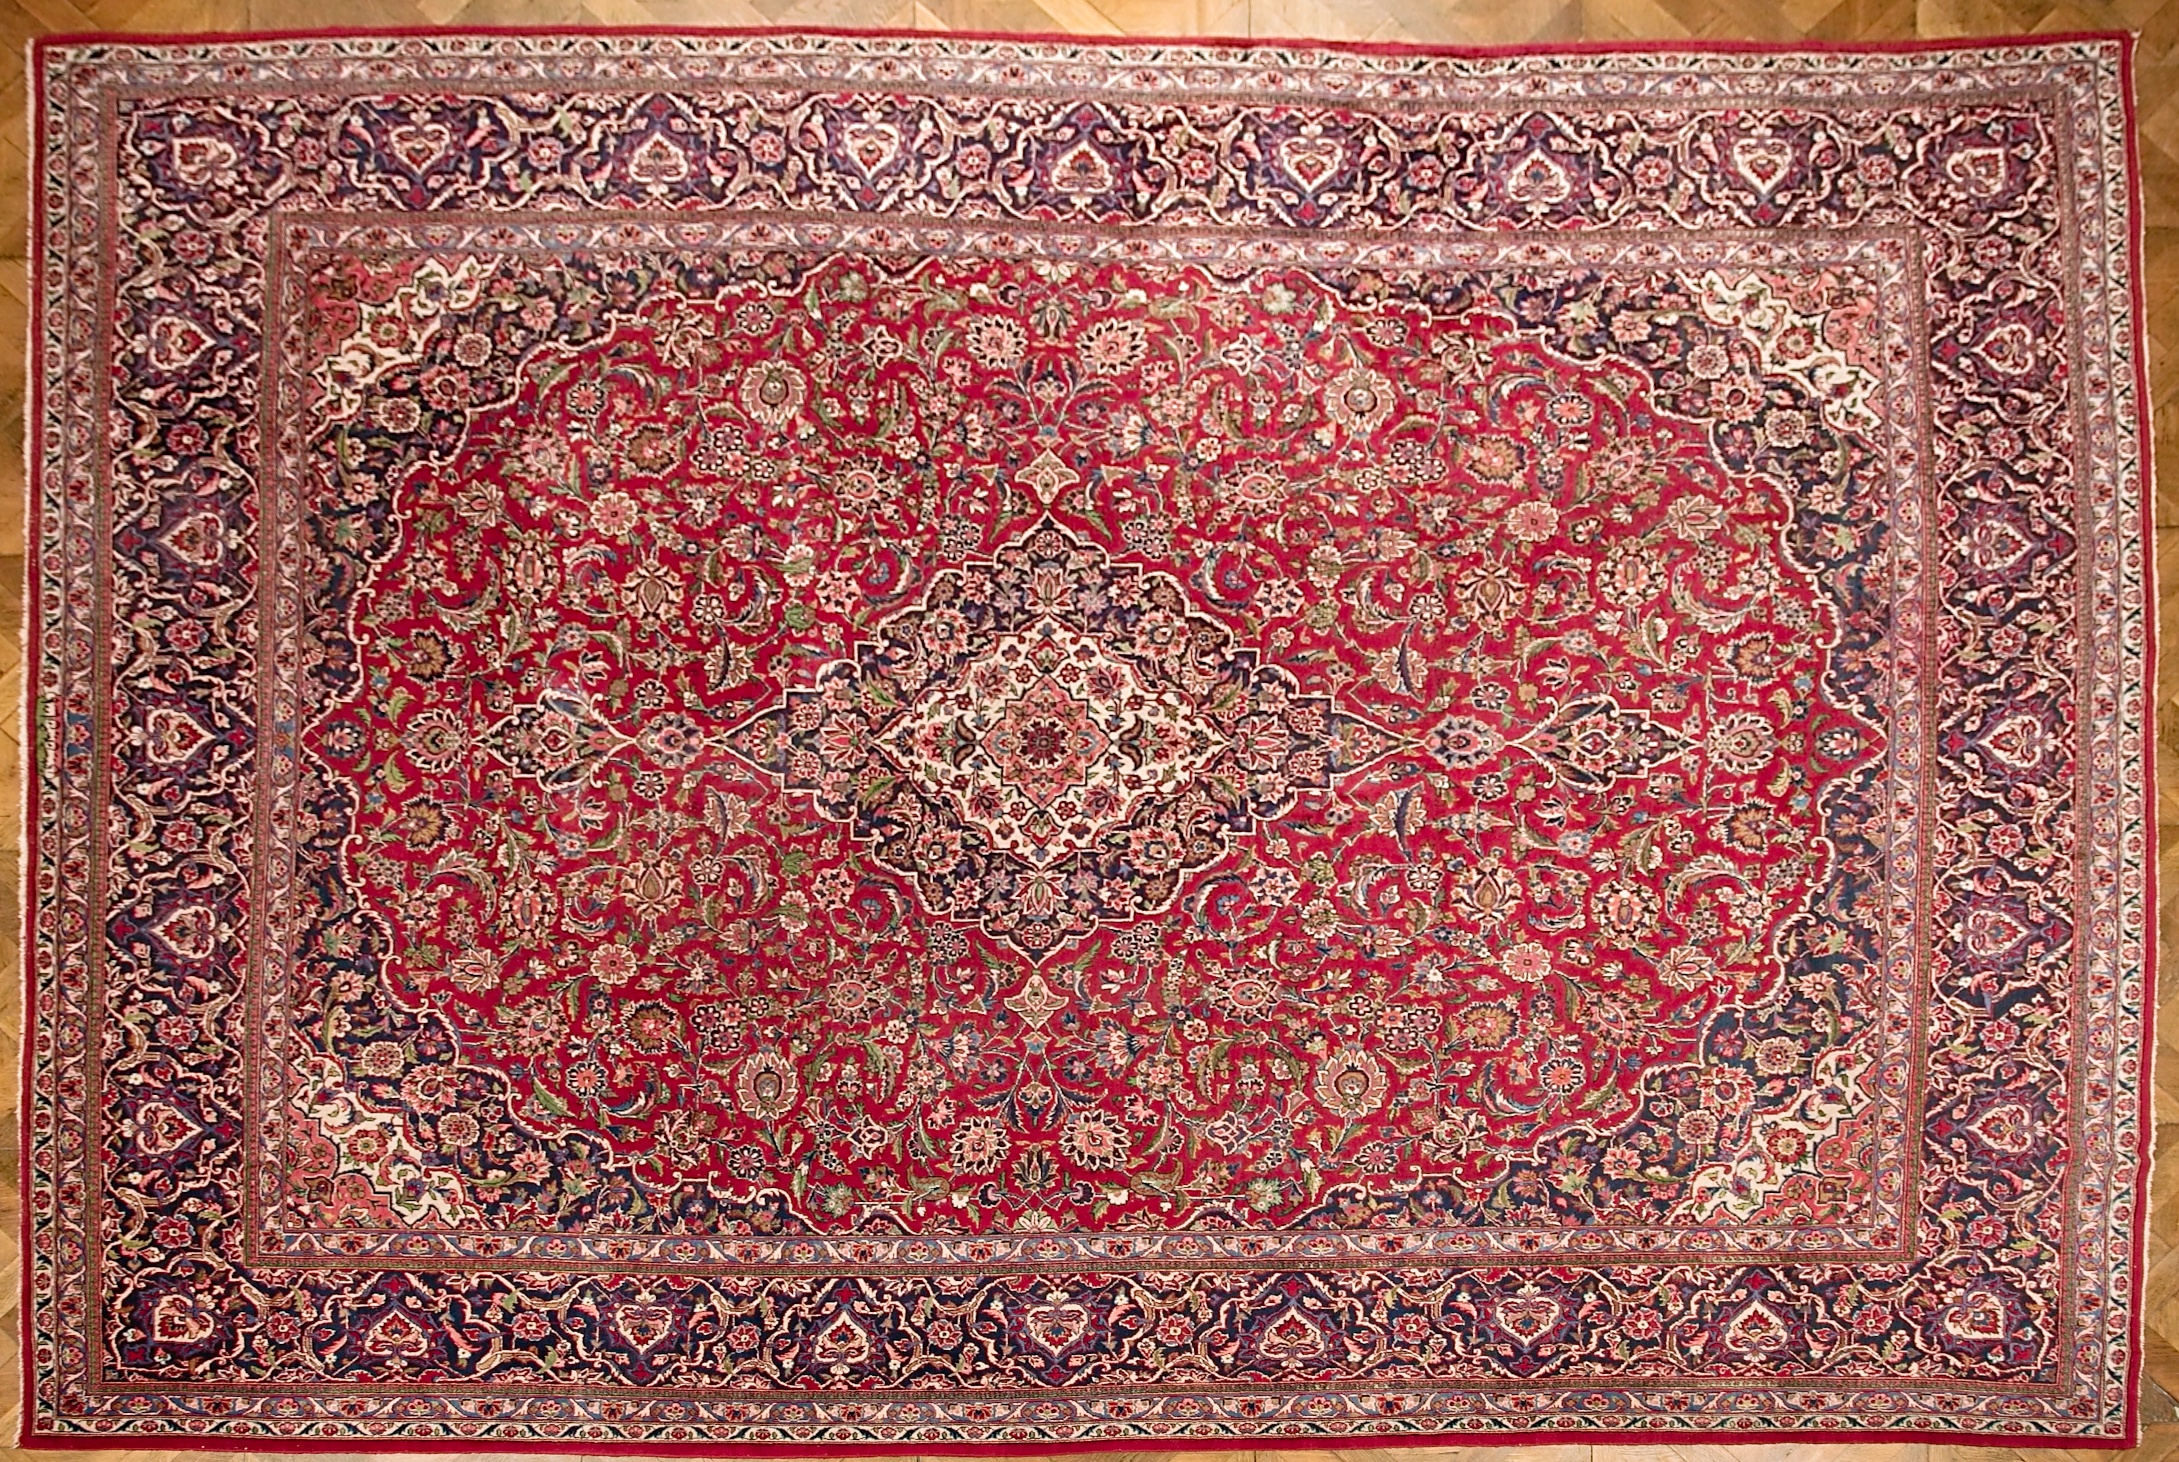 Velký perský koberec Kashan, signovaný, 435 x 327 cm